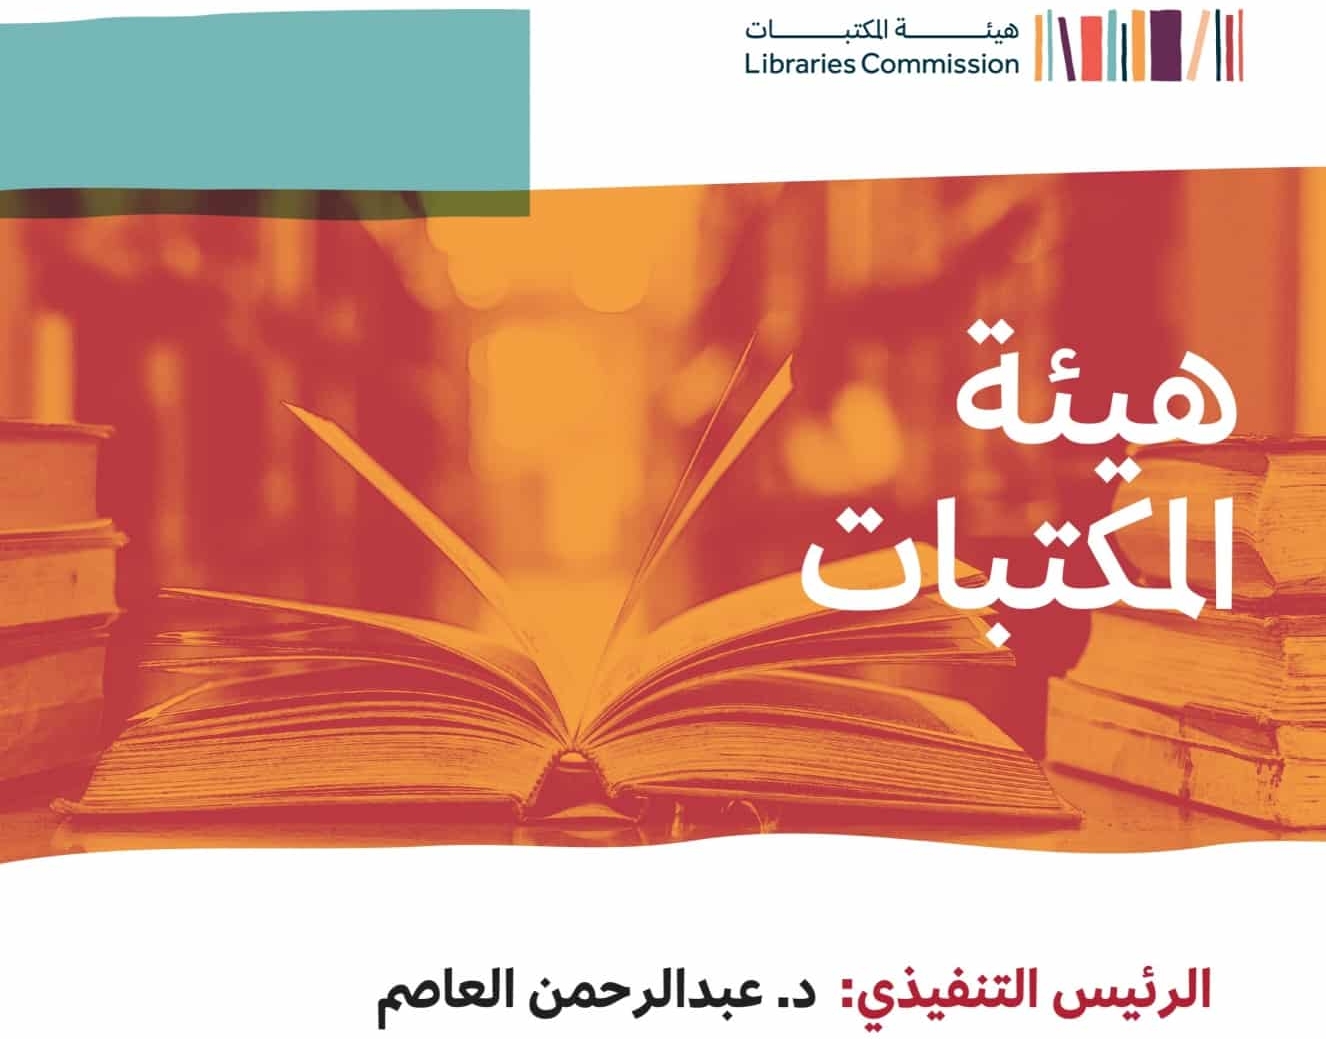 عبدالرحمن العاصم رئيساً تنفيذياً لهيئة المكتبات